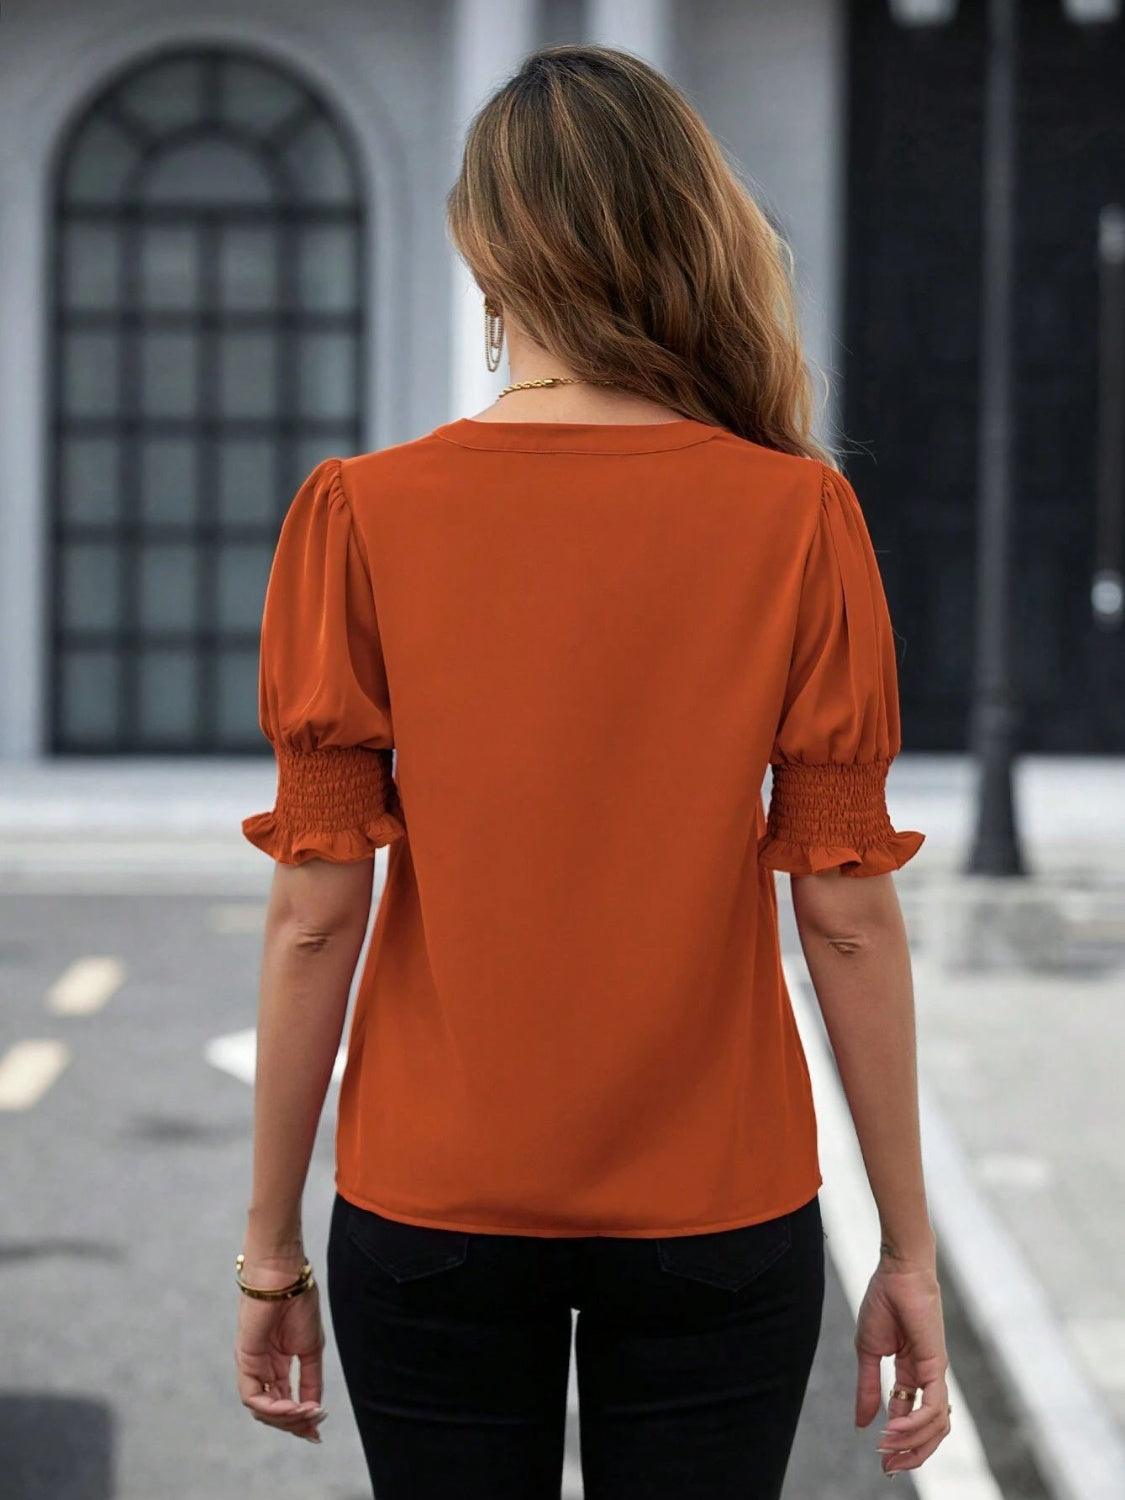 a woman in an orange top is walking down the street